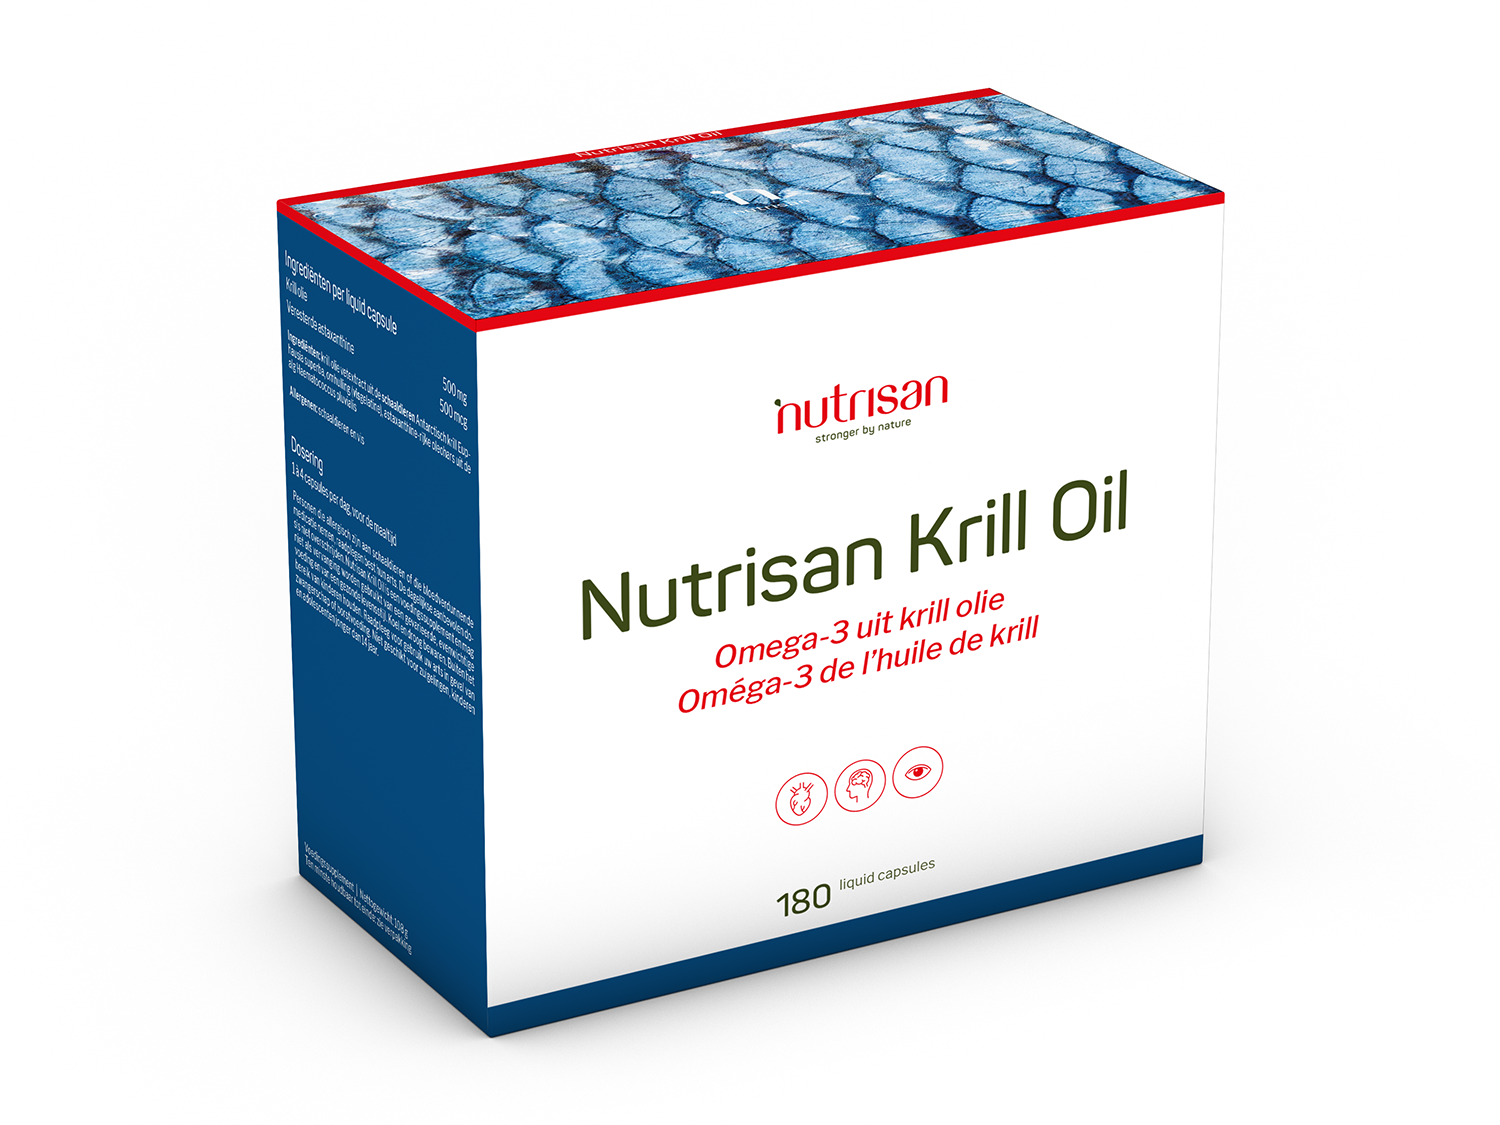 Nutrisan Krill Oil (500 mg) - 180 ocean caps 